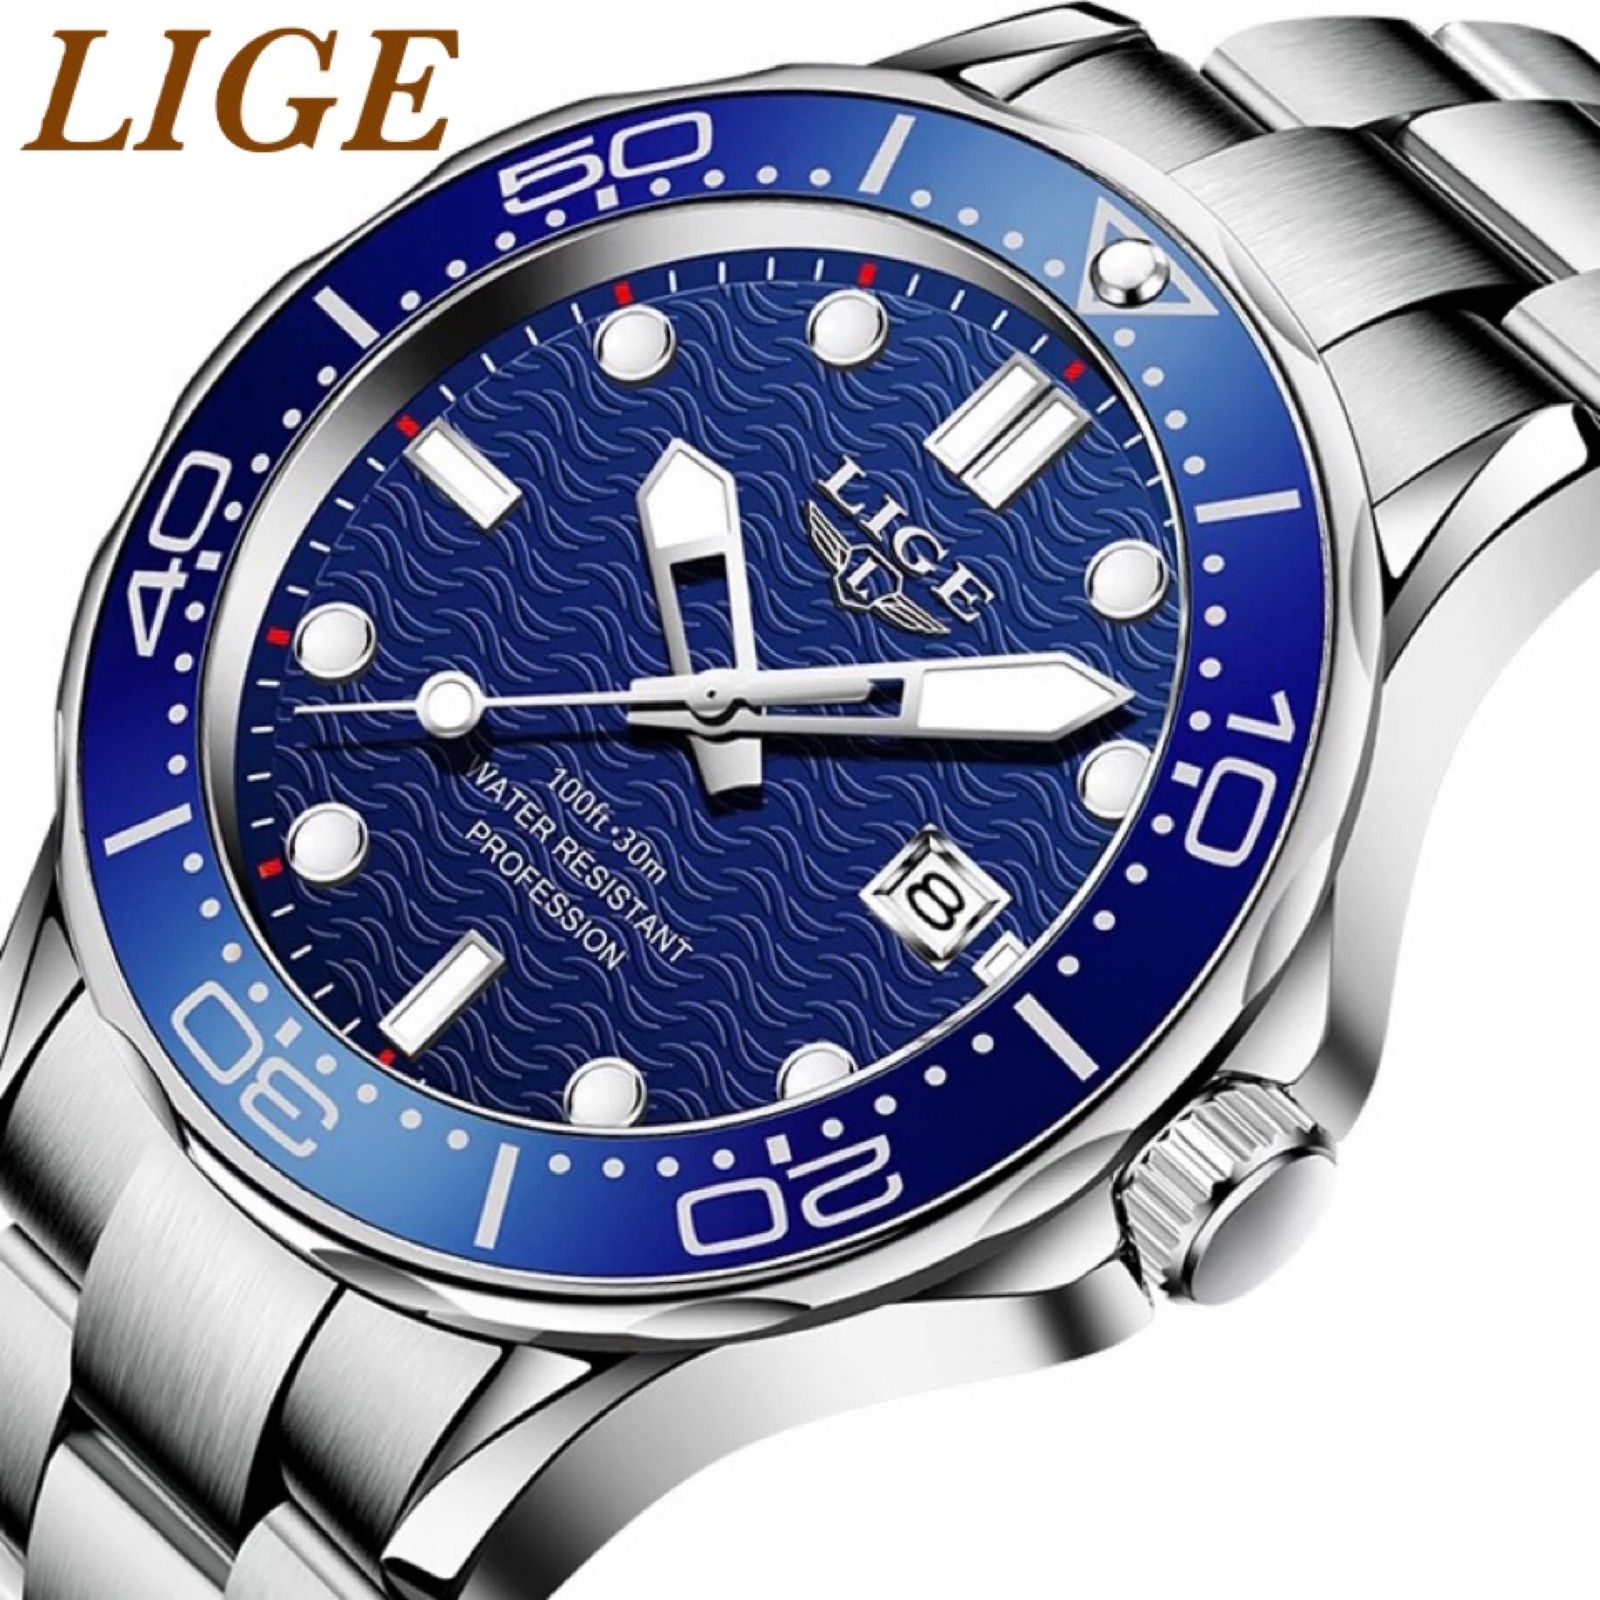 格安店 新品 LIGE スポーツオマージュデジタルウォッチ メンズ腕時計